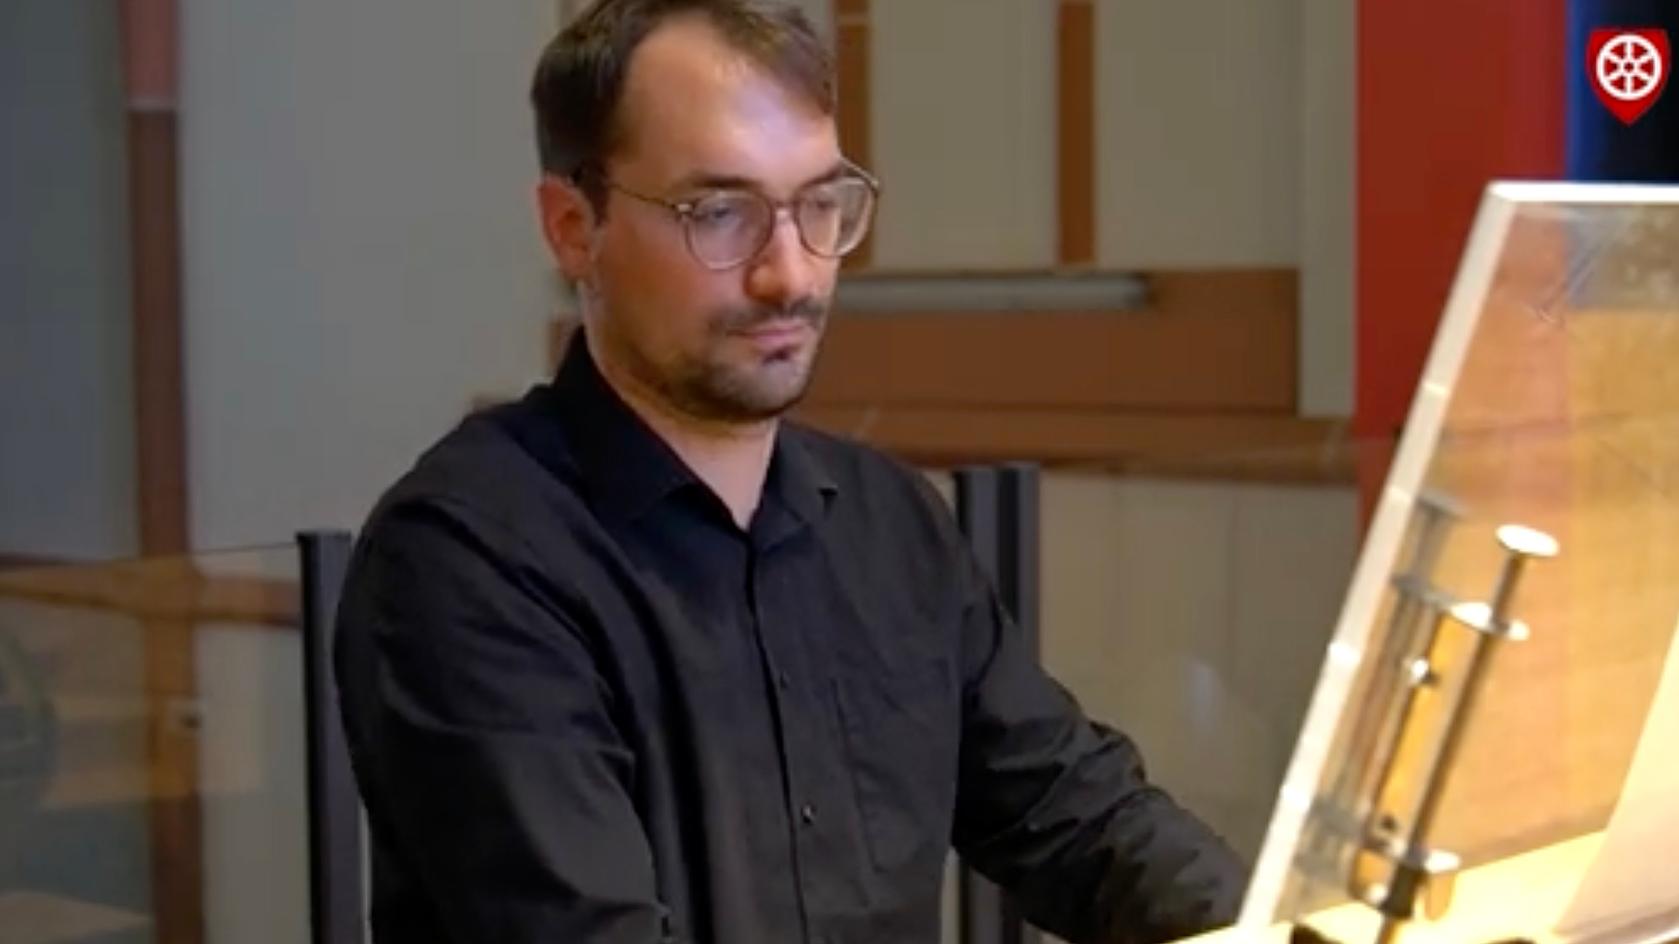 Welches Stück spielt Michael Gilles an der Orgel ?